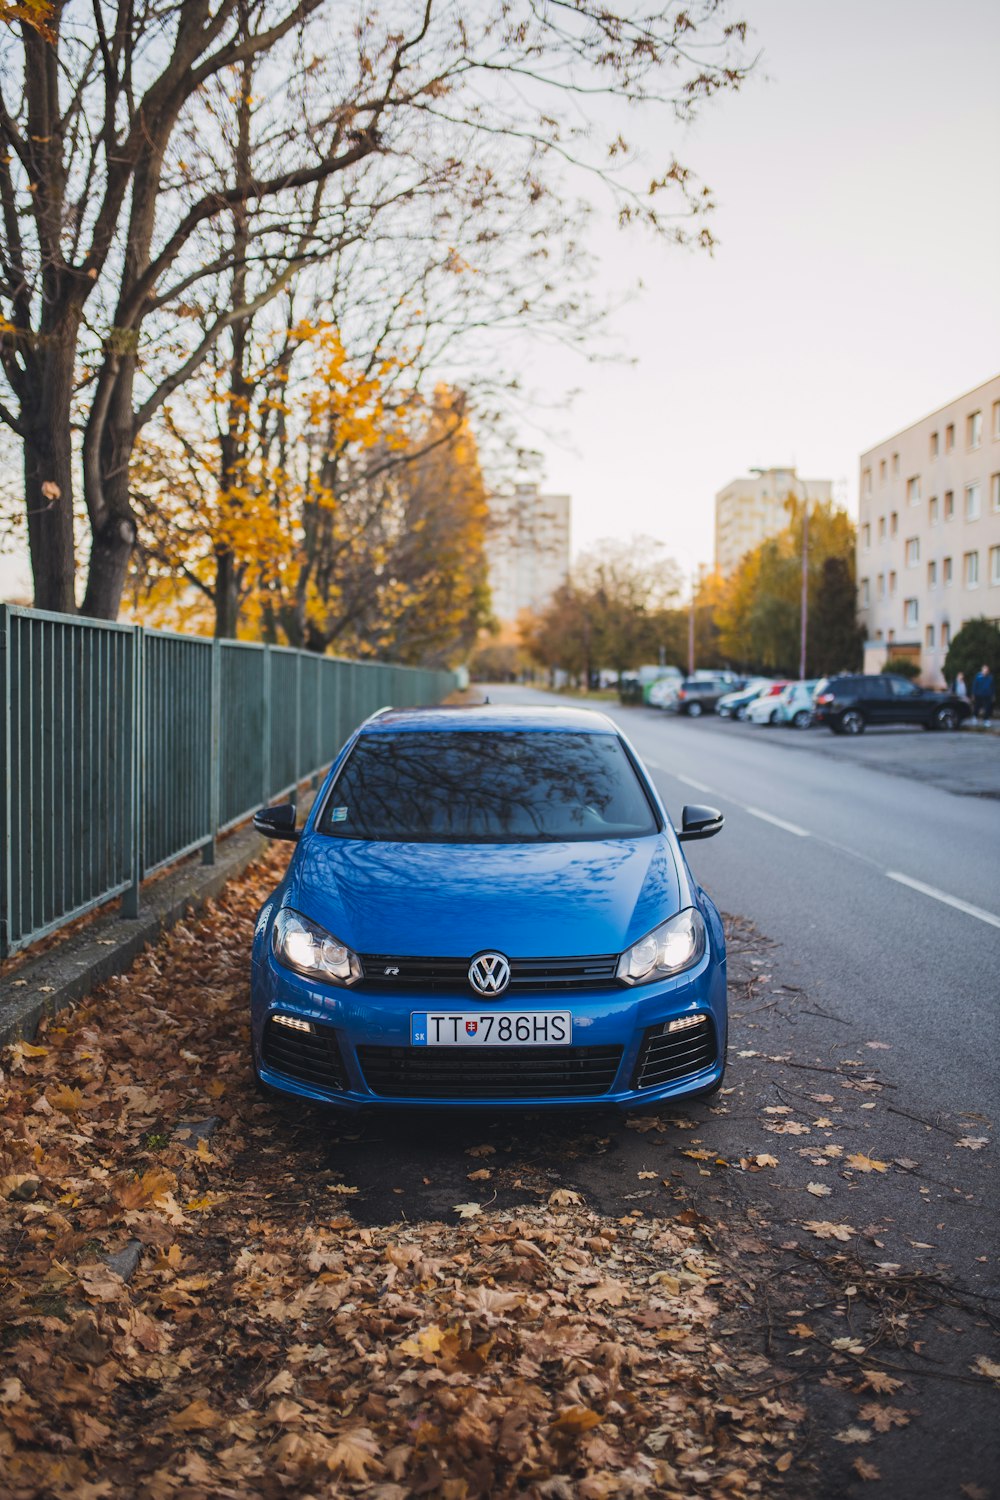 veículo Volkswagen azul na estrada do asfalto